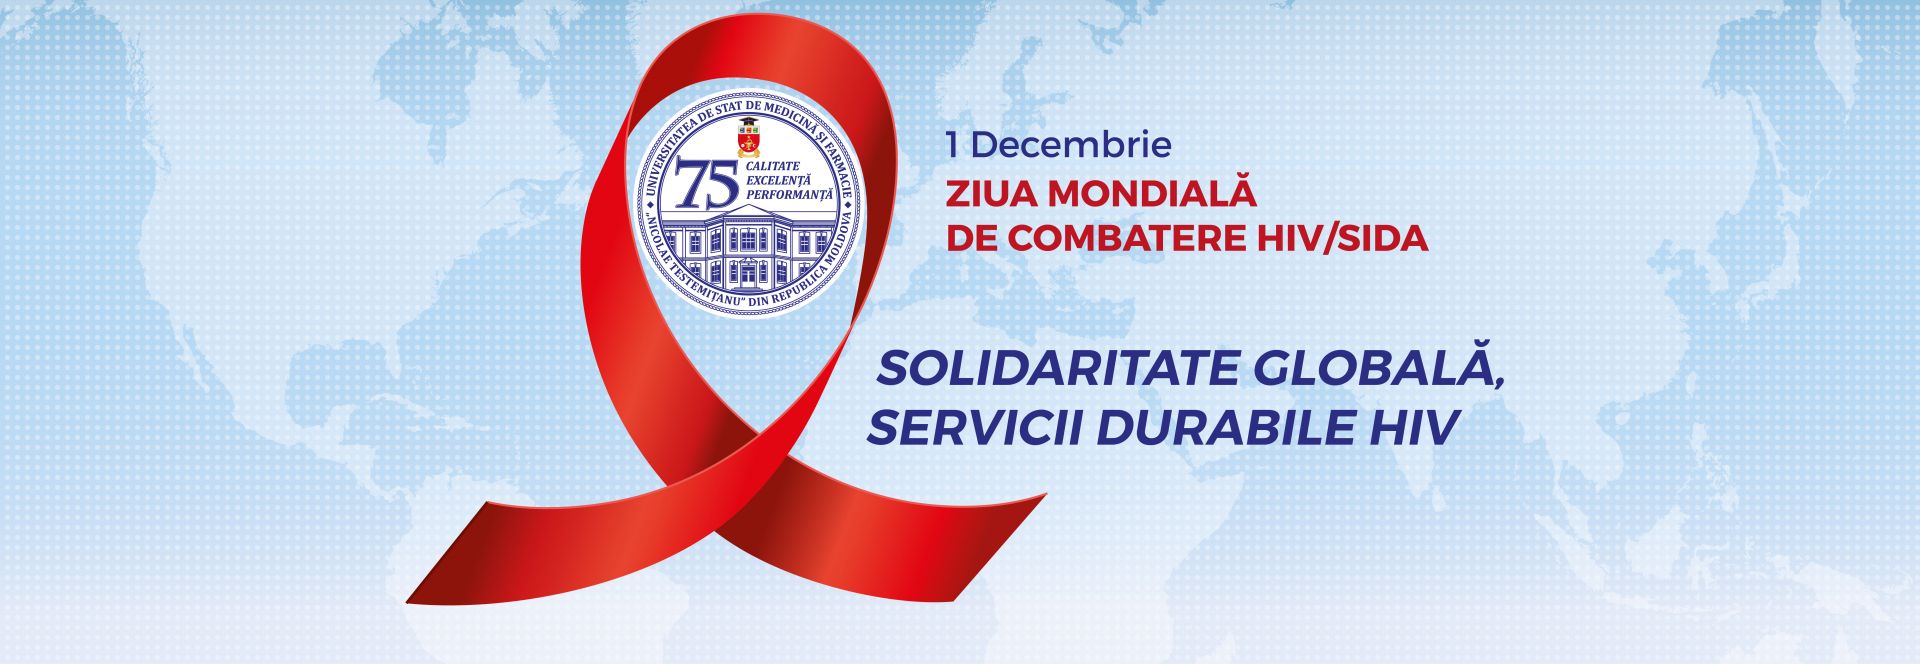 Ziua Mondială de Combatere HIV/SIDA